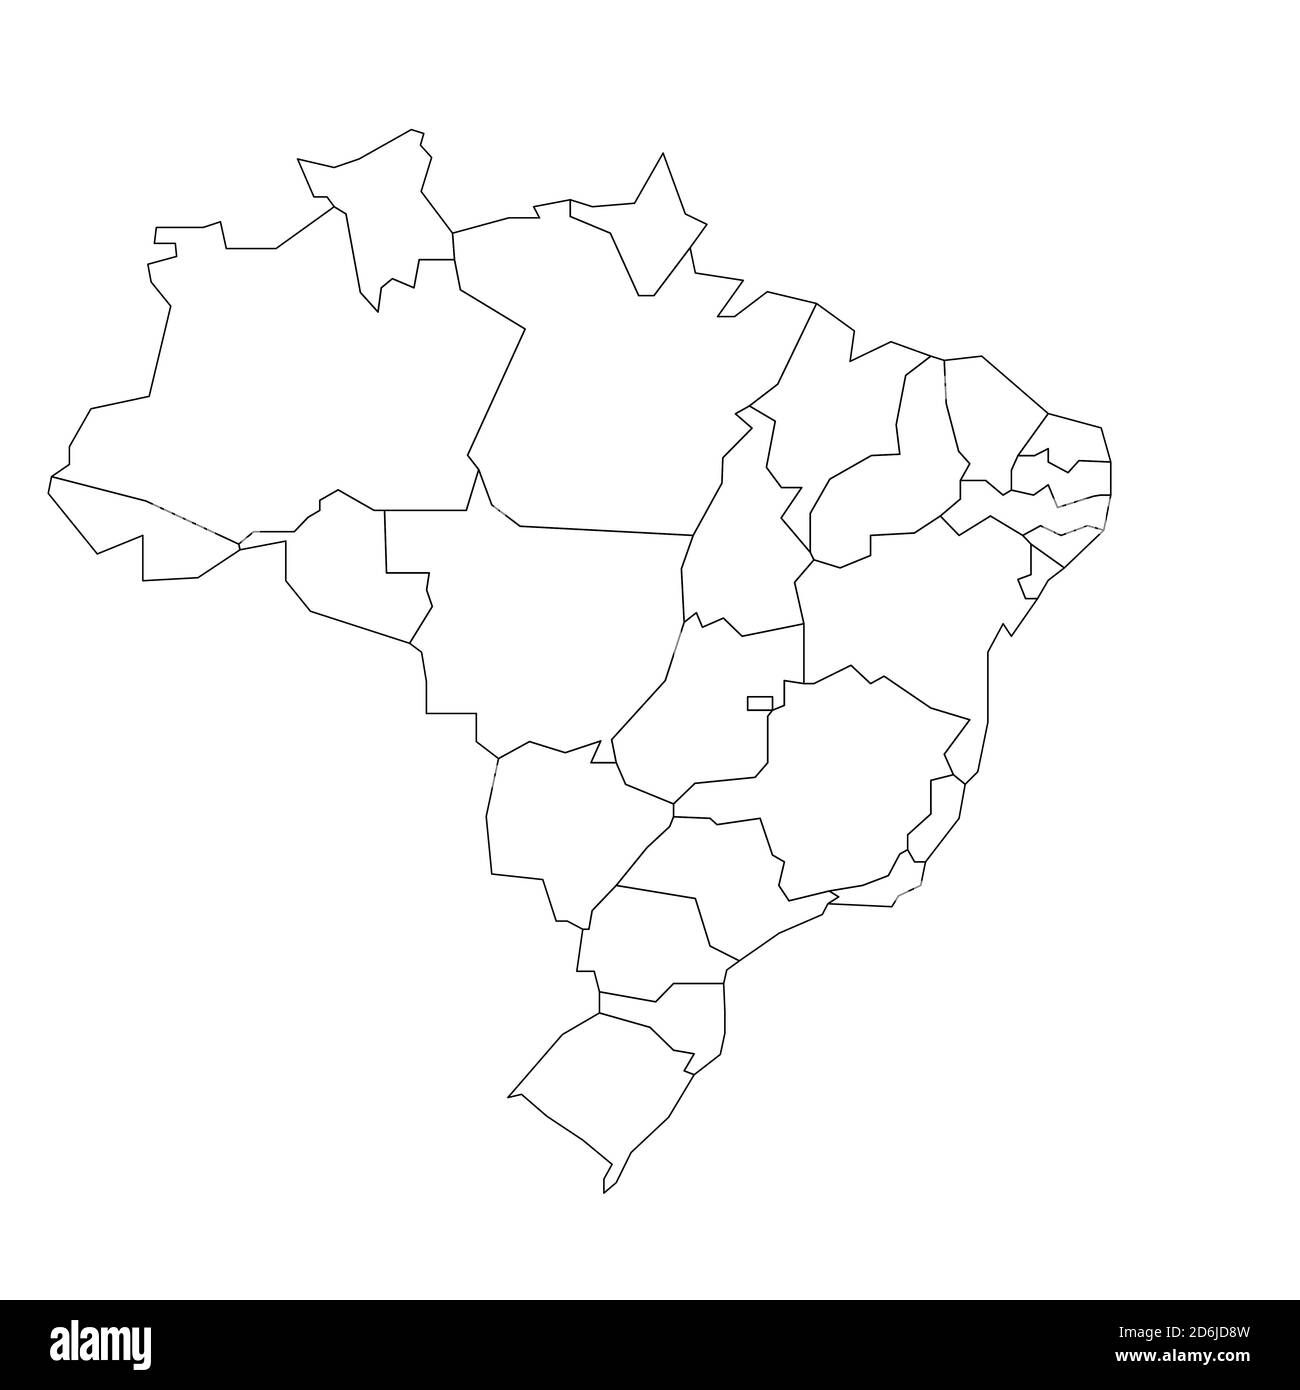 Mappa politica vuota del Brasile. Divisioni amministrative - stati. Semplice mappa con contorno nero. Illustrazione Vettoriale